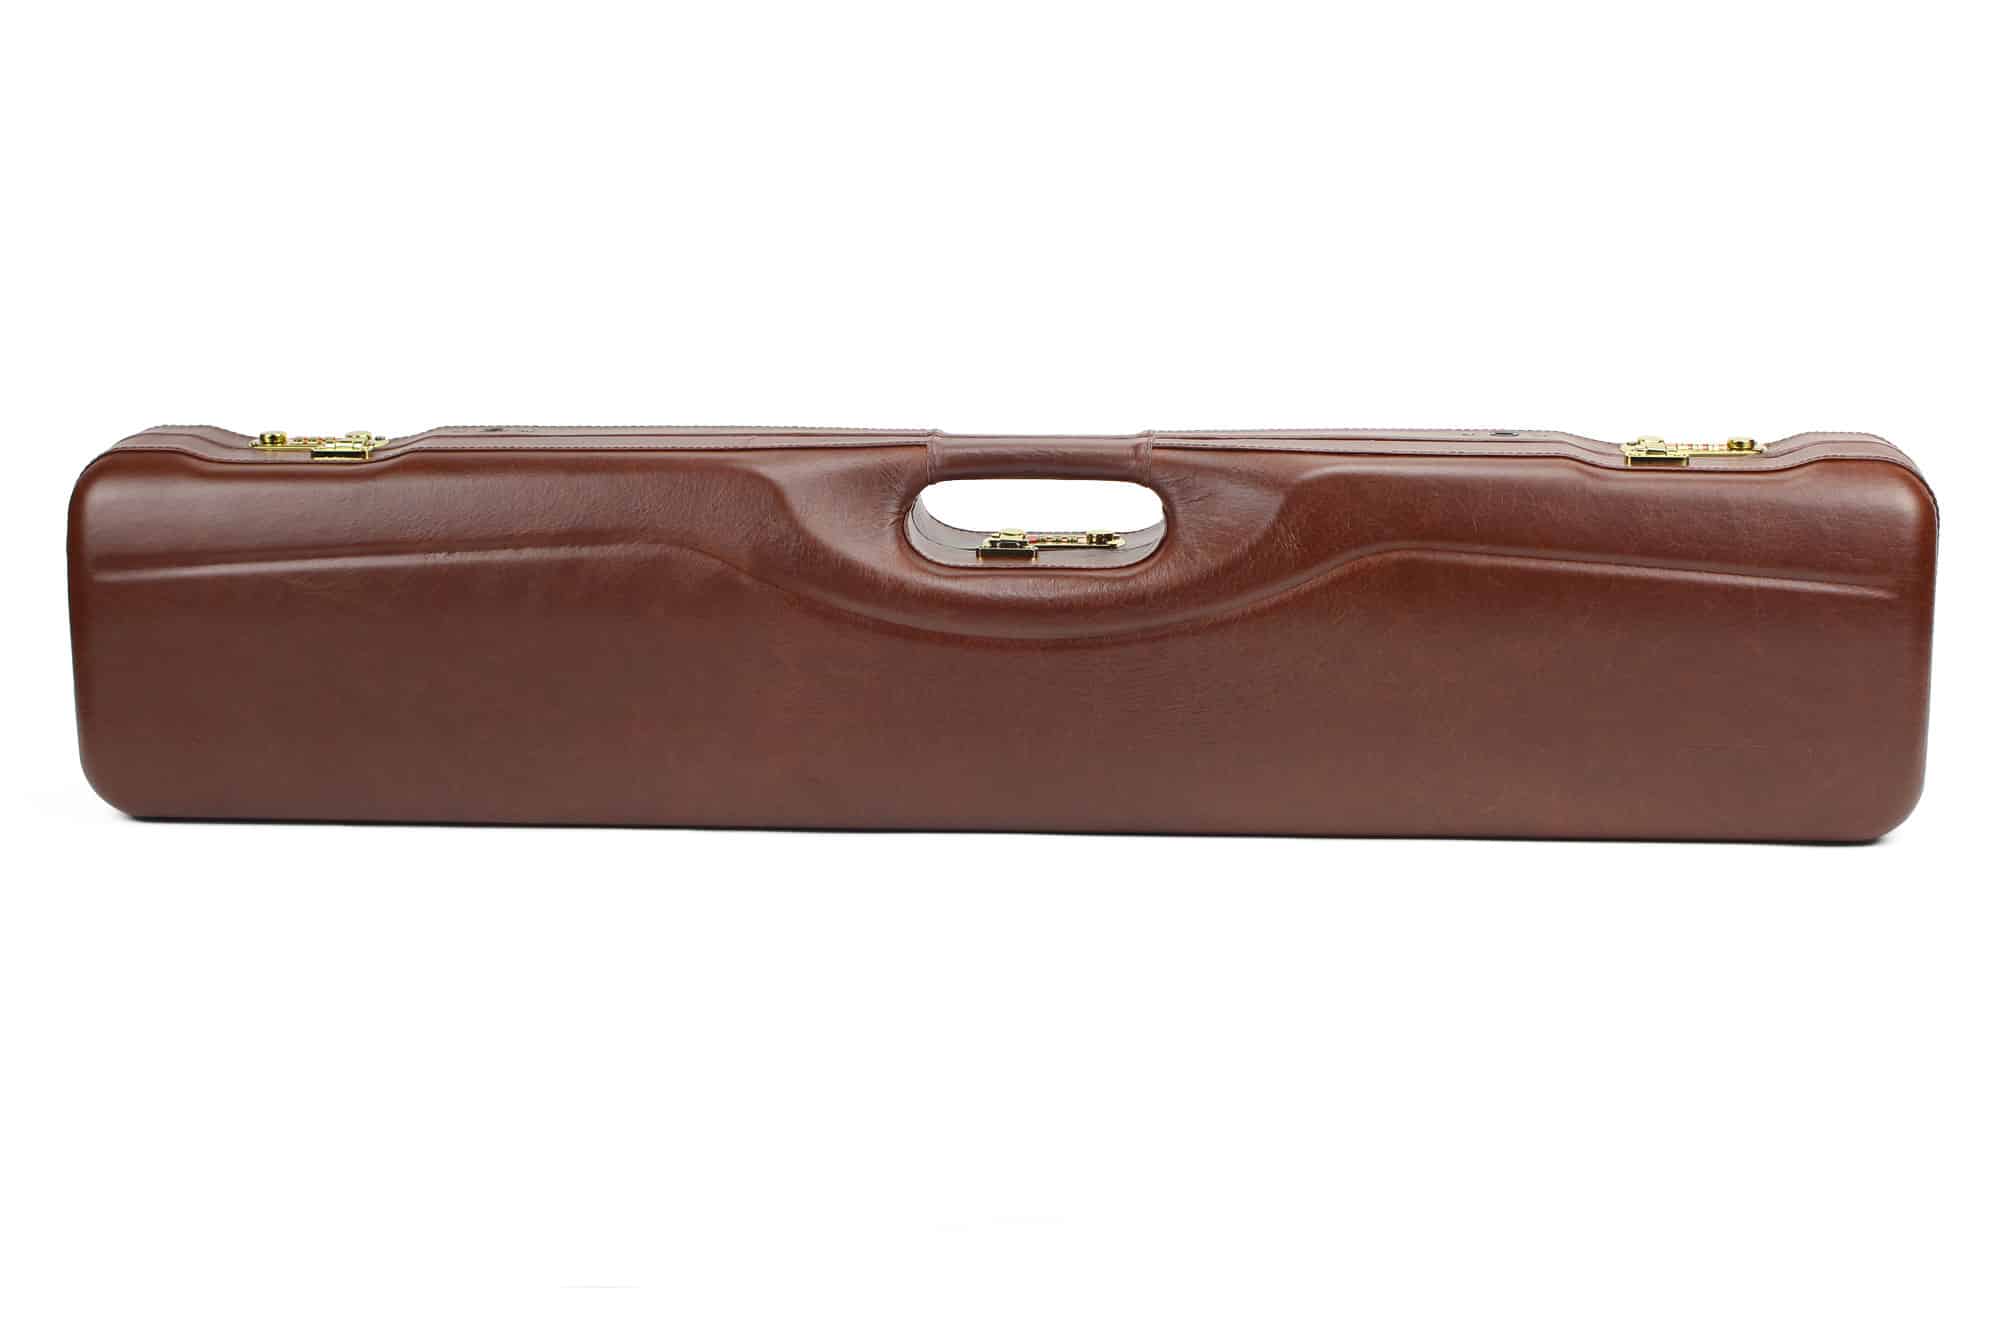 Компактный спортивный чехол для ружья Negrini OU/SxS, итальянский кожаный, 32 дюйма — 16407PL/6164